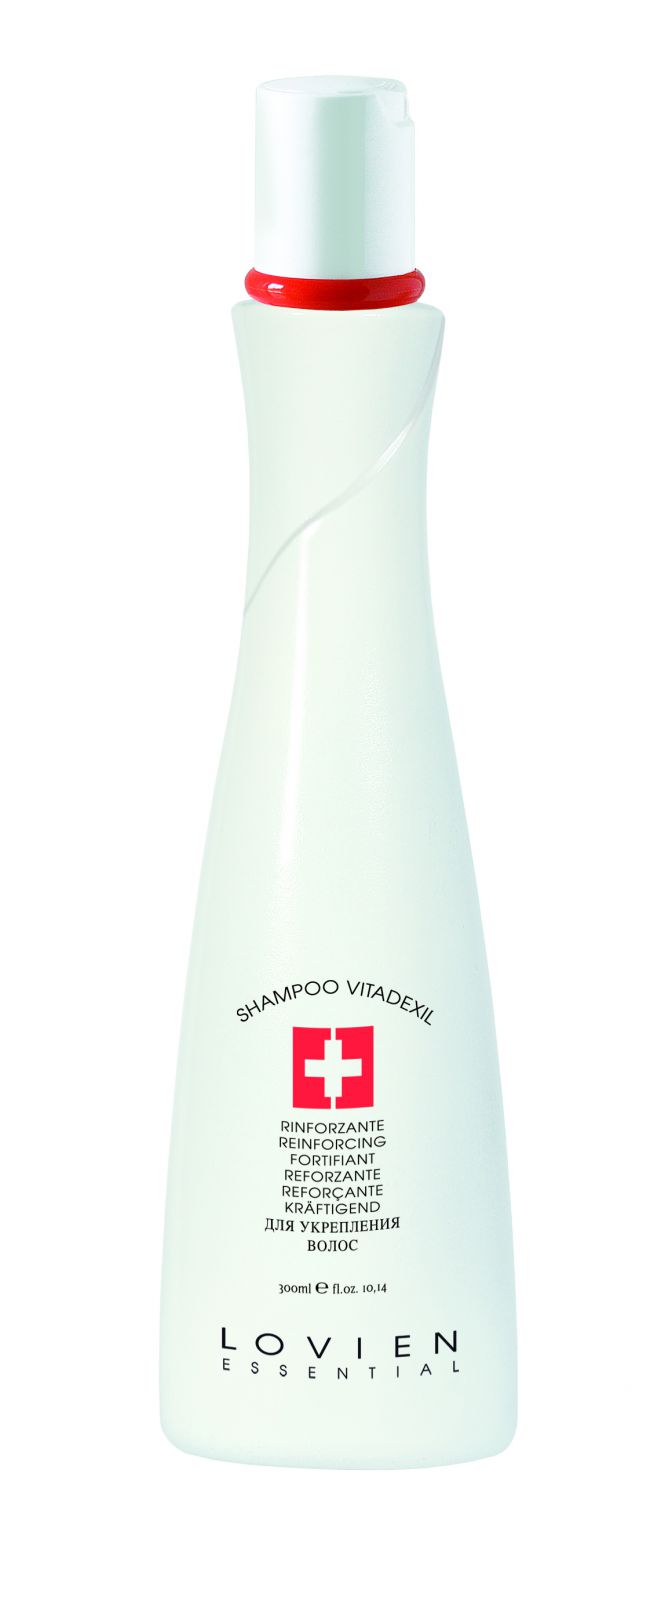 Lovien Shampoo Vitadexil 300ml - šampon na vlasy - Vlasový šampon s mentolovým efektem.